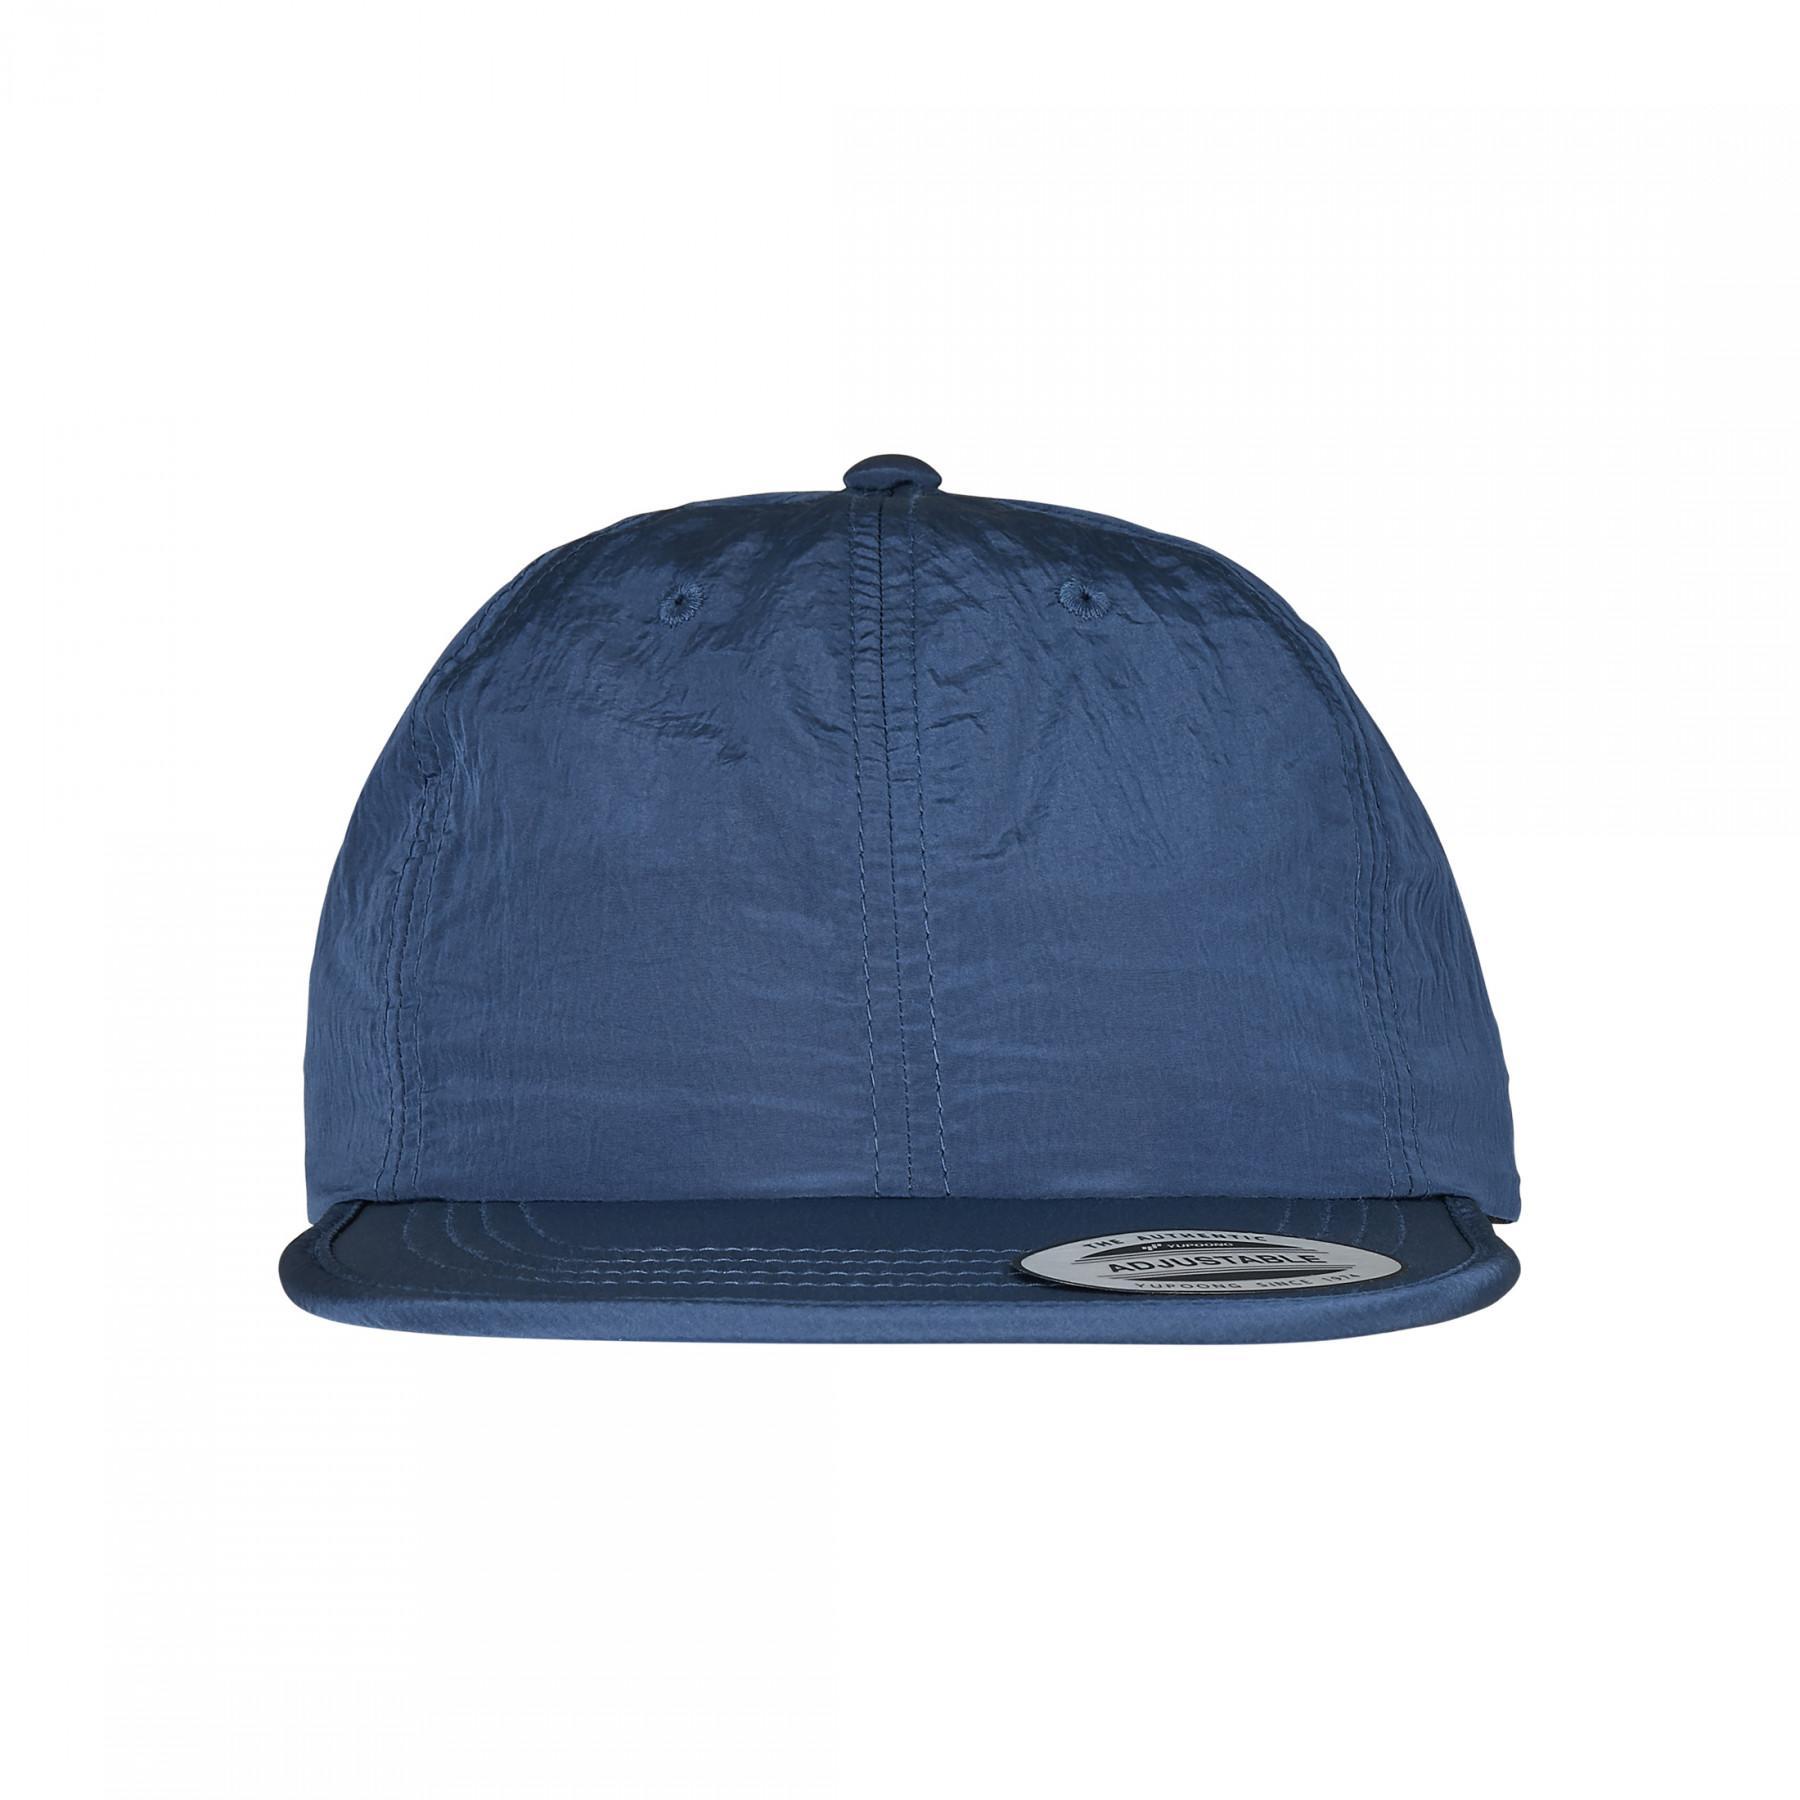 Urban classic regulowana czapka nylonowa